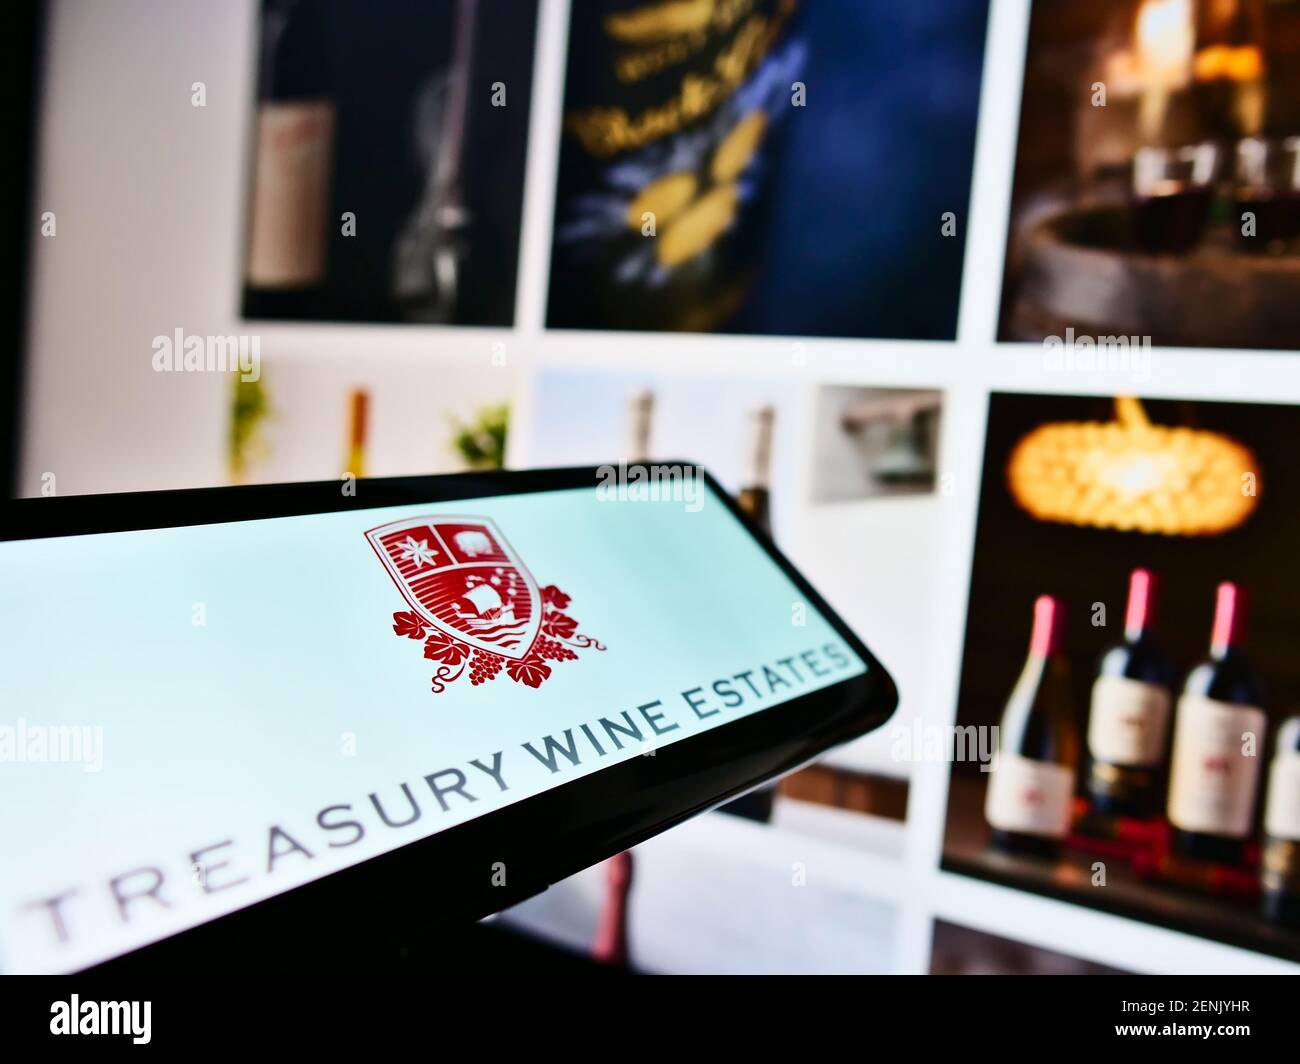 Cellulare con logo della società vinicola australiana Treasury Wine Estates Limited sullo schermo davanti alla pagina web. Mettere a fuoco il centro del display del telefono. Foto Stock